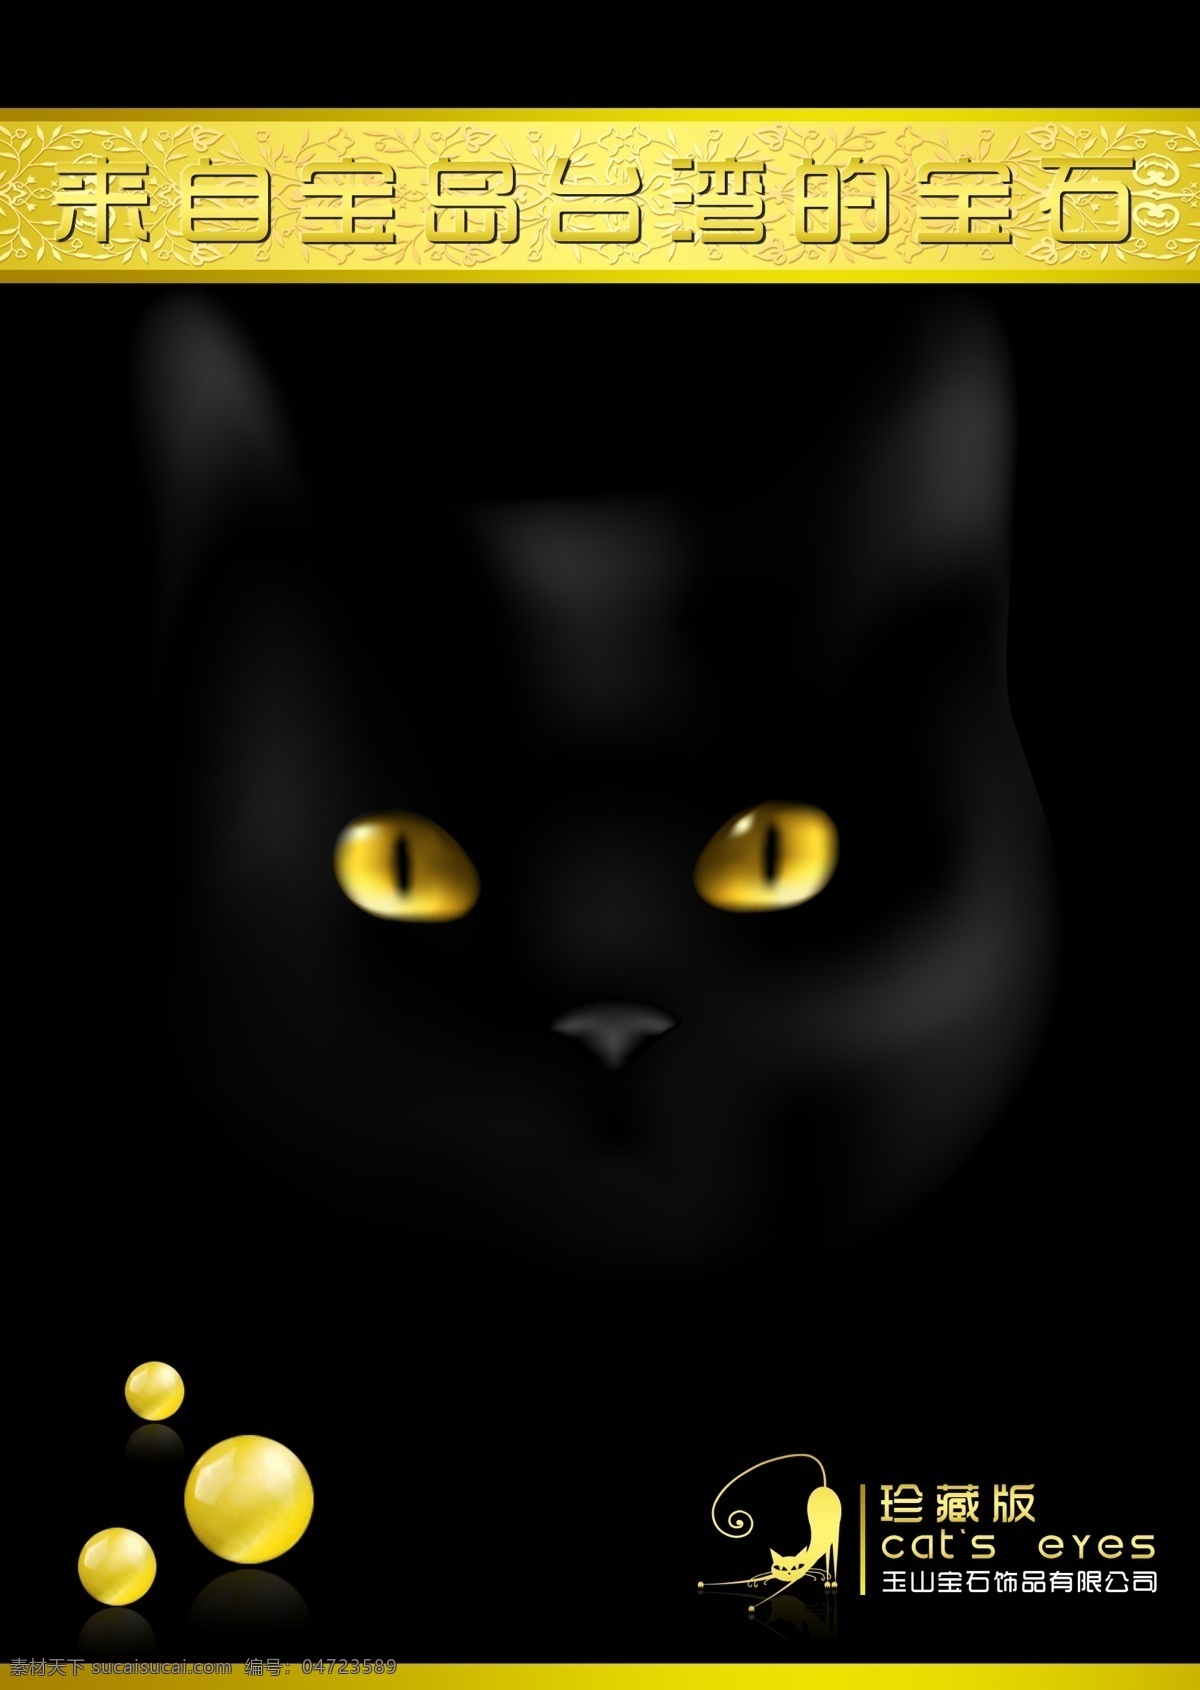 书籍 封面 宝石 广告设计模板 黑猫 画册设计 猫 书籍封面 源文件 杂志封面 猫眼石 南昌 尊威 视觉设计 其他画册封面